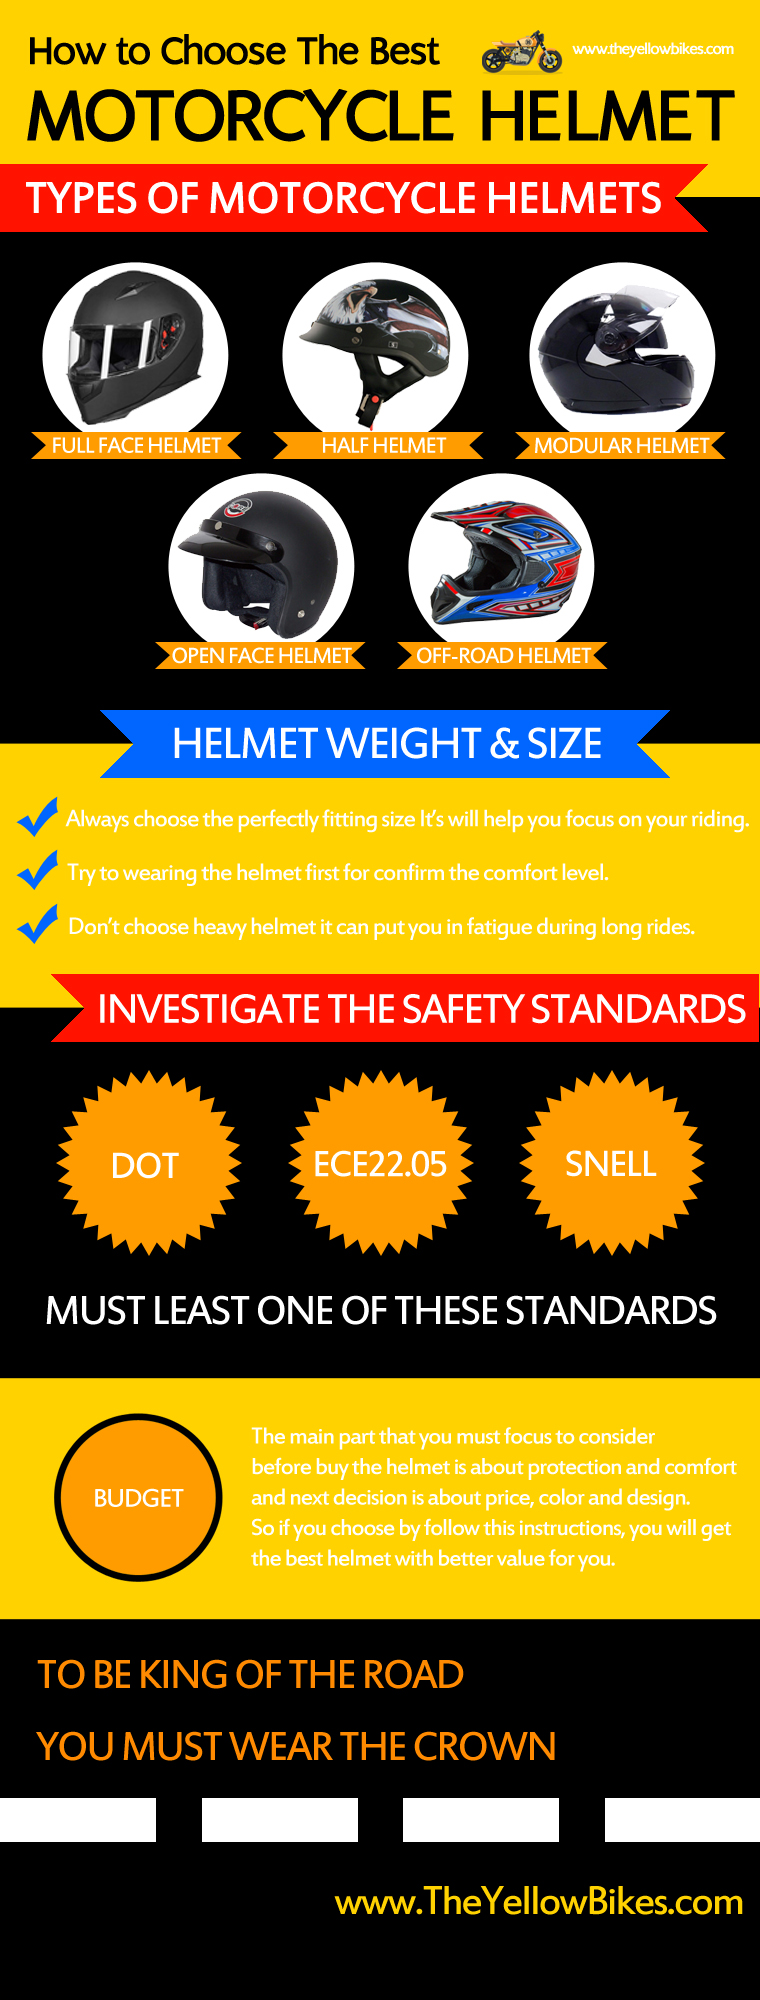 How to Choose The Best Motorcycle Helmet